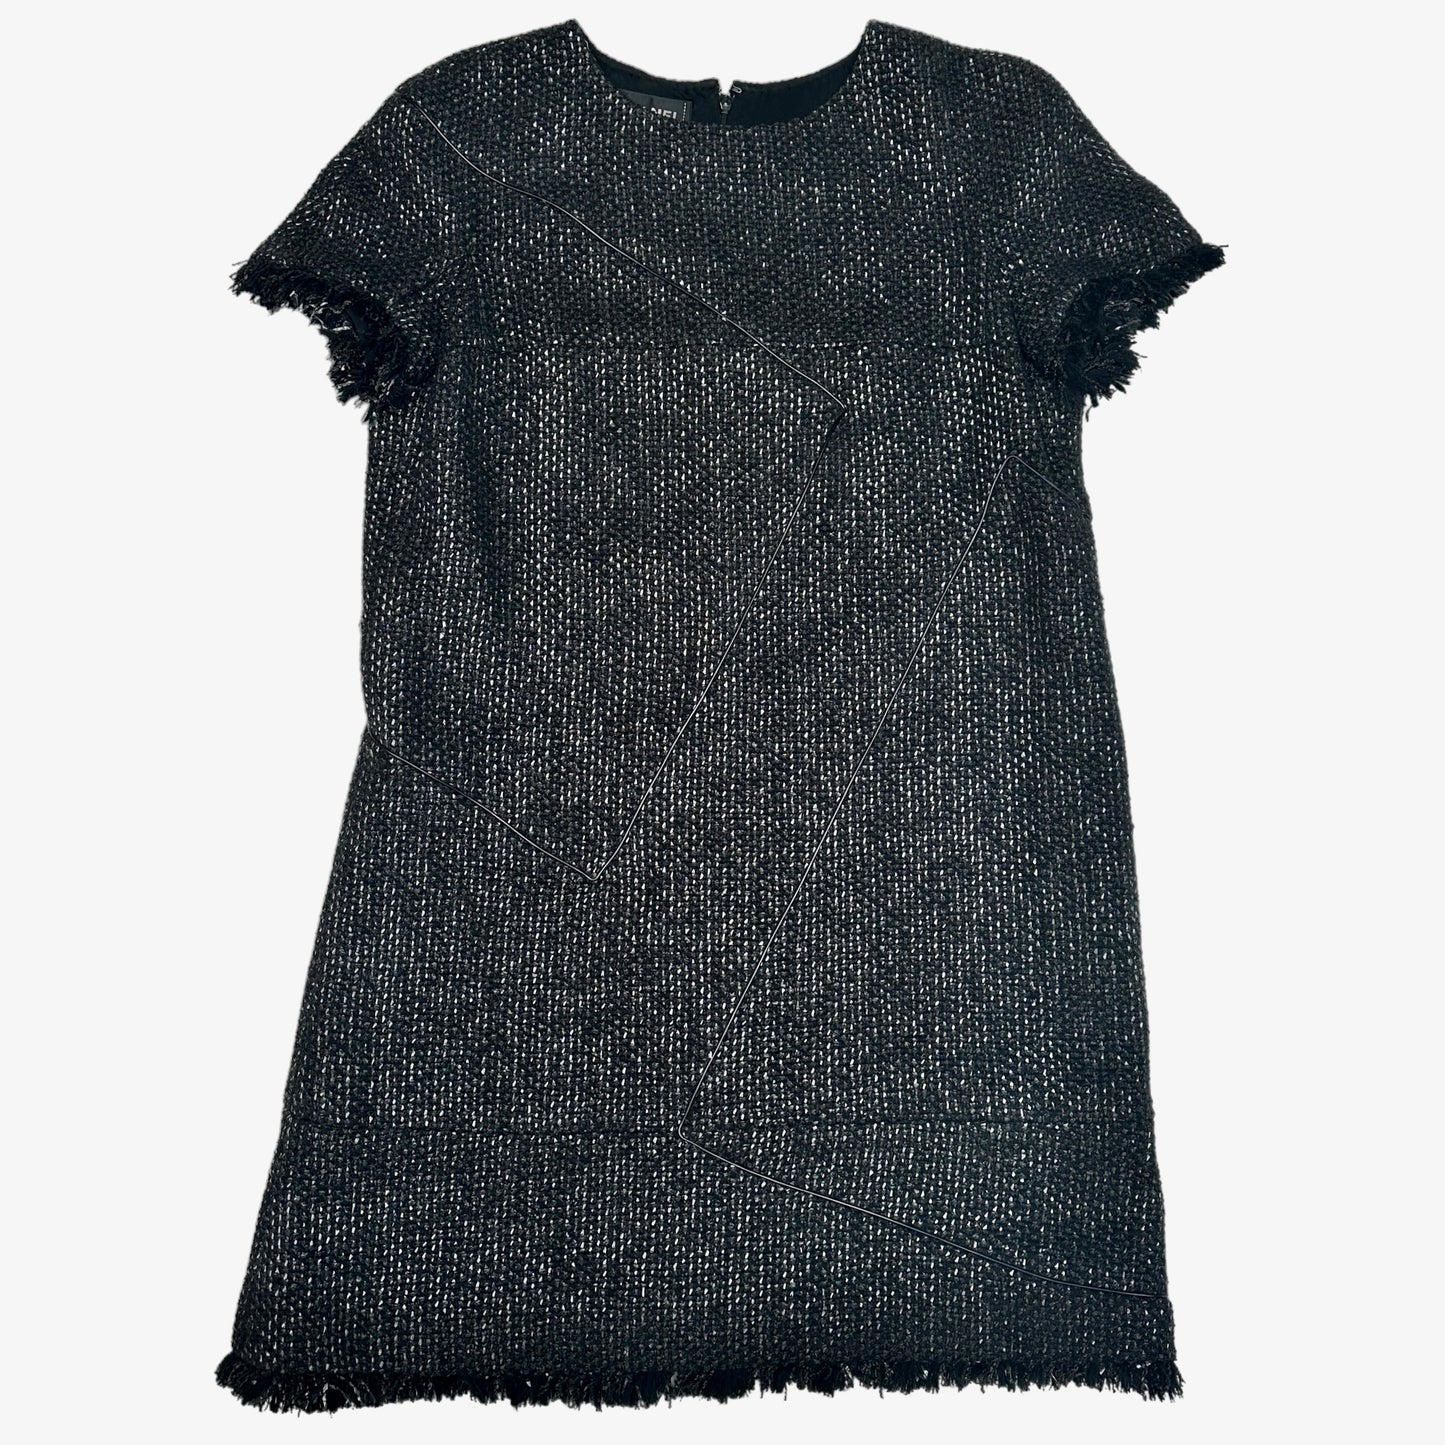 Black Tweed Dress - L